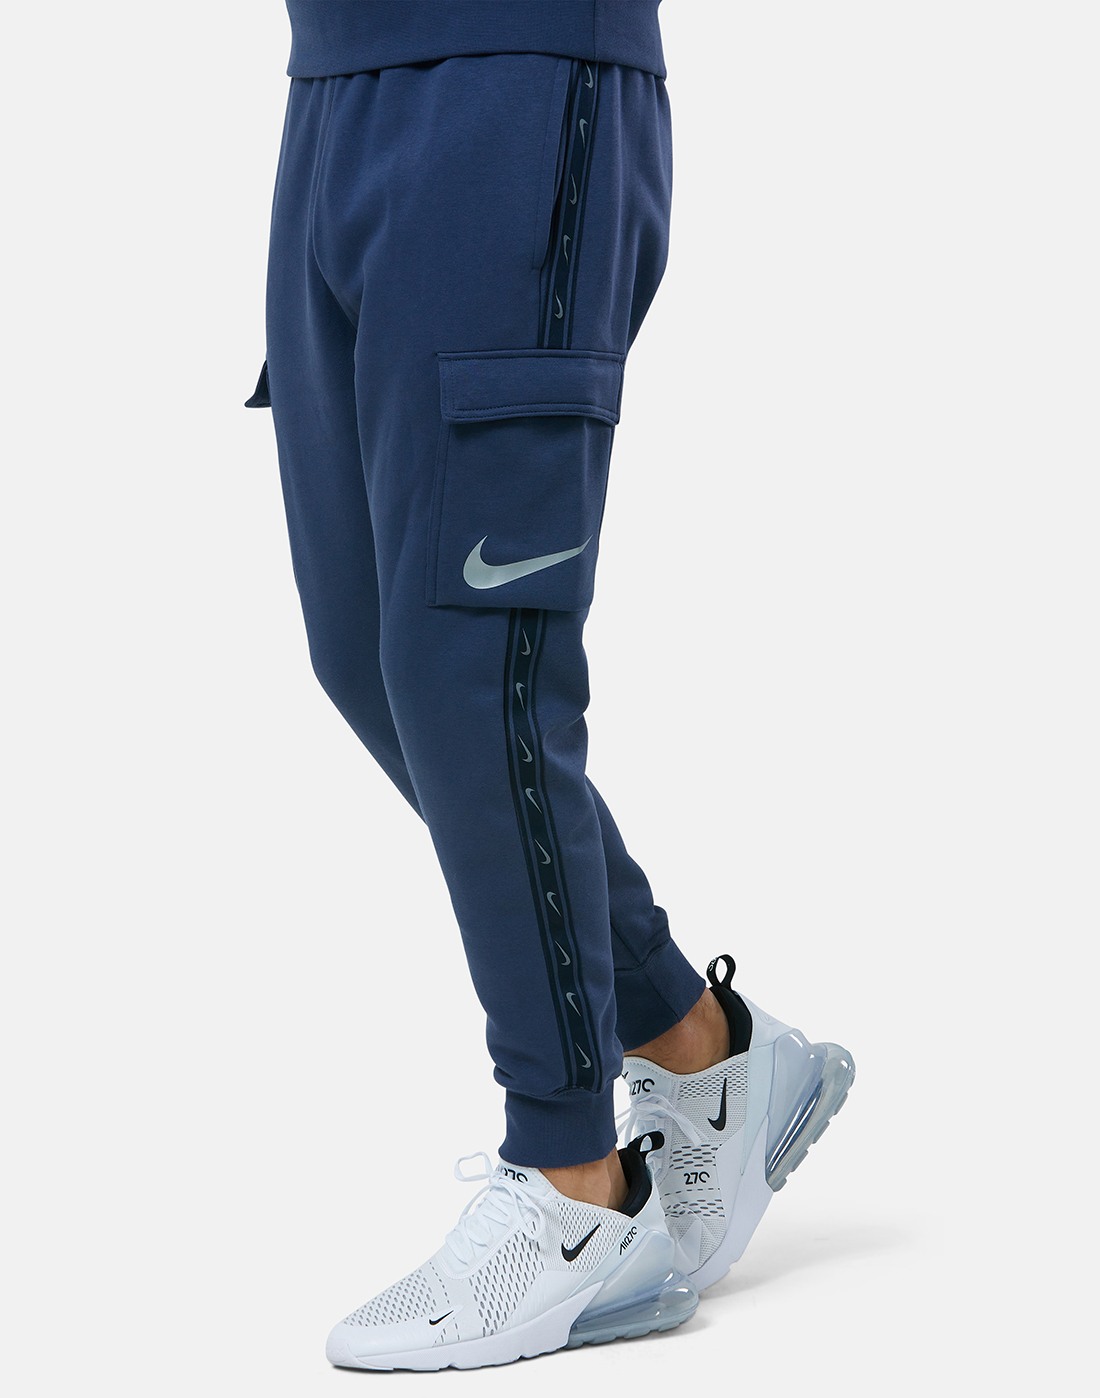 Men's Nike Sportswear Tech Fleece Cargo Utility Pants| Finish Line